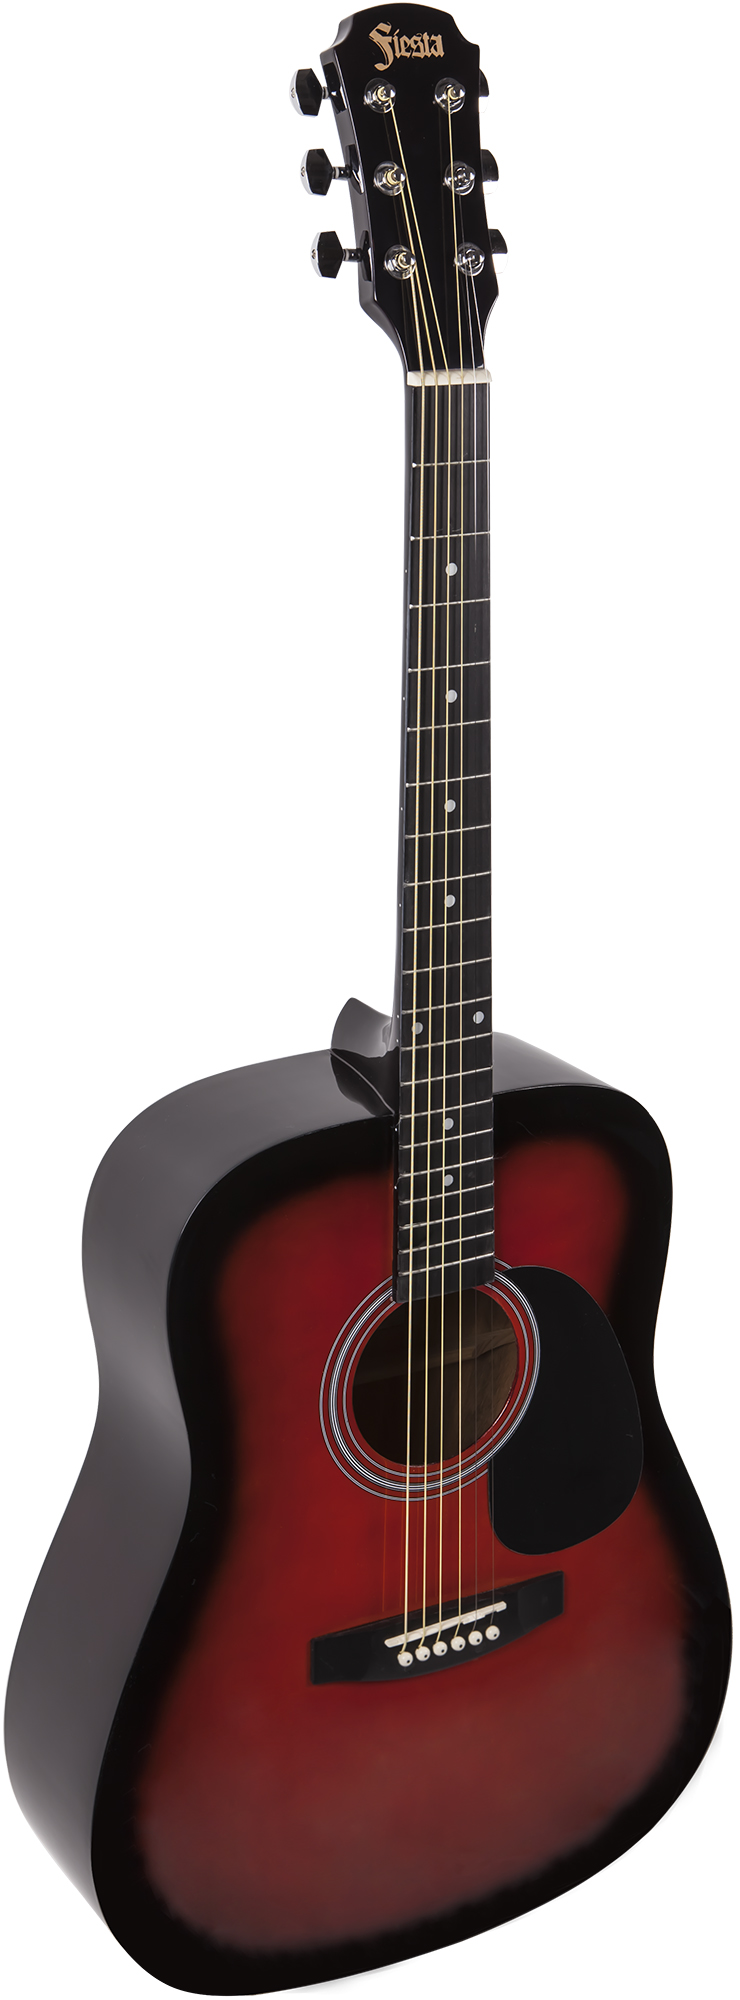 Акустические гитары Aria FIESTA FST-300 BS наклейка из натуральной гитары rosette inlay circle sound hole декоративная декольная аксессуар для 40 41 дюймовых гитар